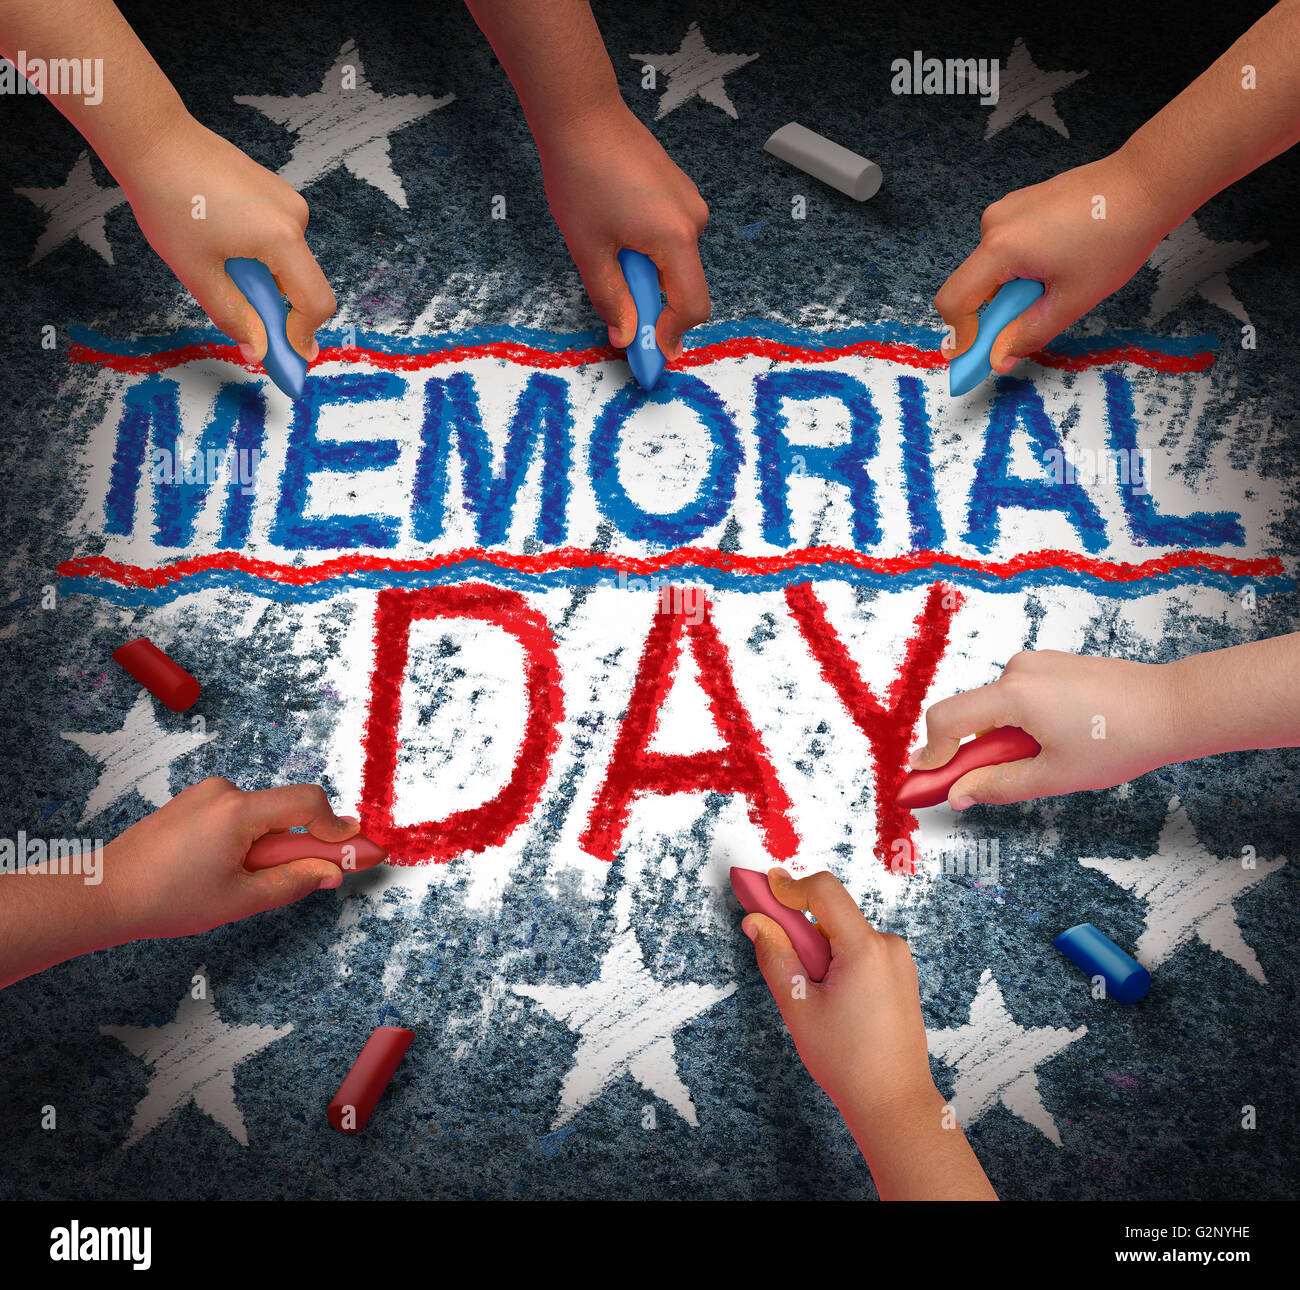 Il memorial day celebrazione come un gruppo di diverse persone disegno rosso bianco e blu il testo come un americano patriottico testo tradizionale per onorare i veterani in un 3D illustrazione dello stile. Foto Stock